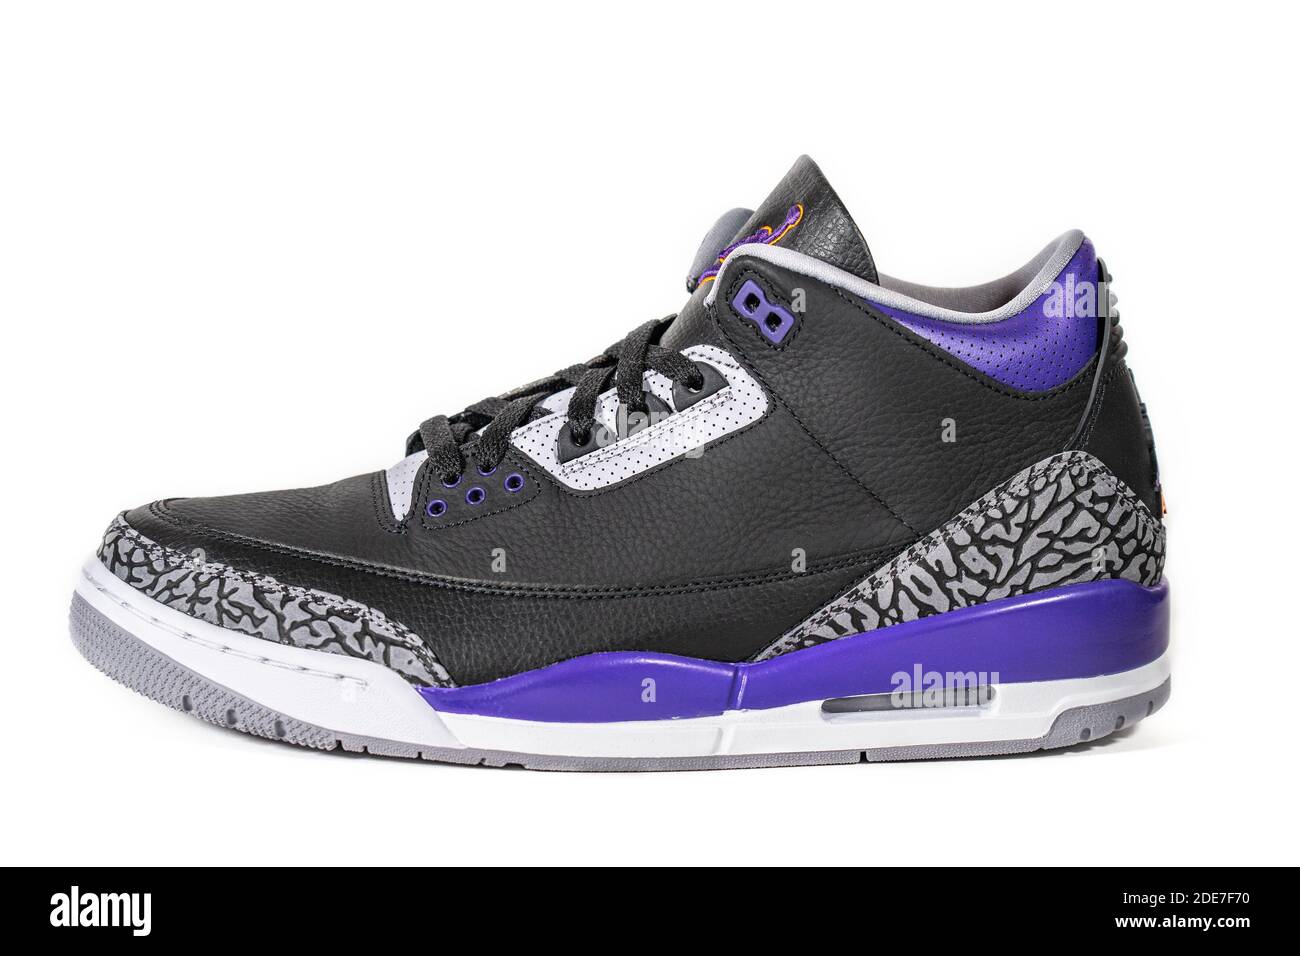 Air Jordan 3 Retro court Purple - légendaire célèbre Nike et Jordan marque rétro basket-ball ou chaussures de sport, maintenant chaussures de mode et de style de vie : Moscou, Russie - novembre 2020. Banque D'Images